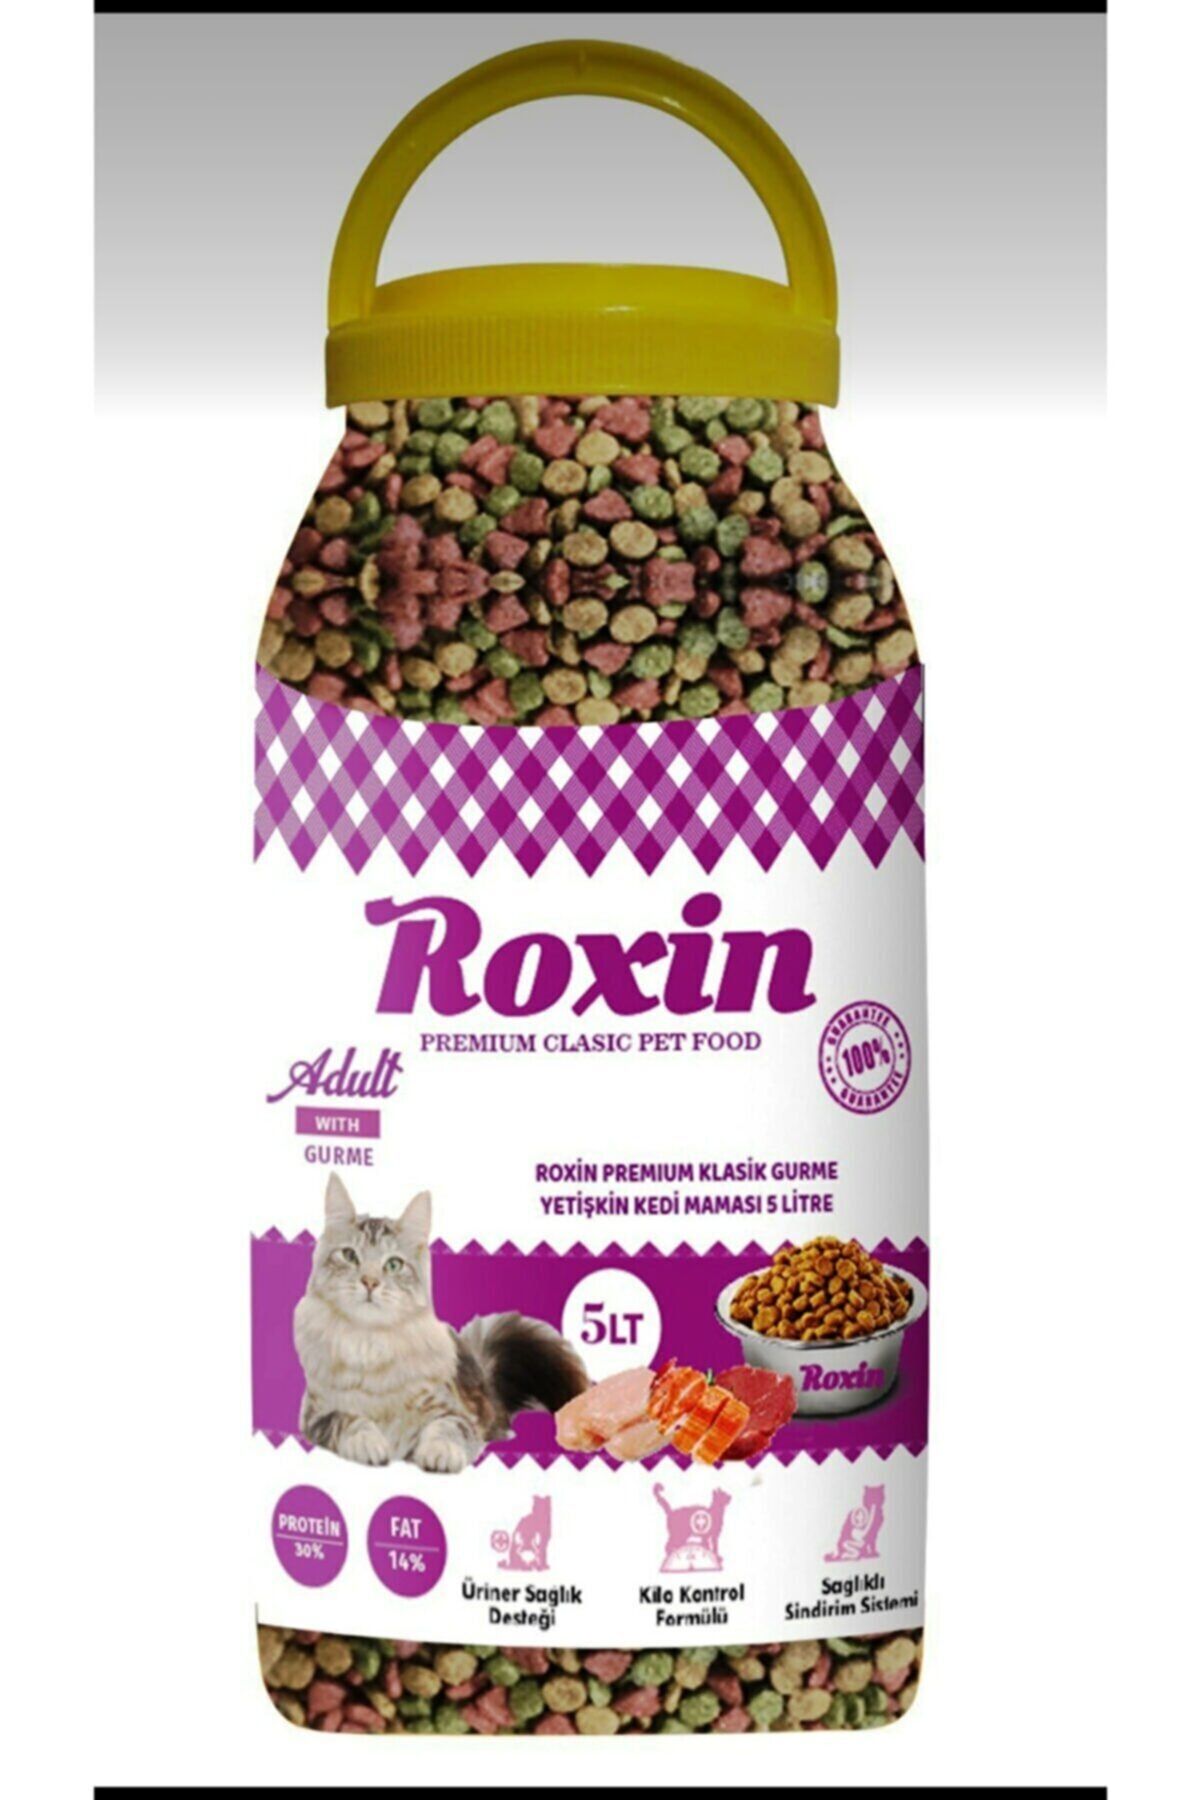 Roxin Premium Klasik Gurme Yetişkin Kedi Maması 5 Lt